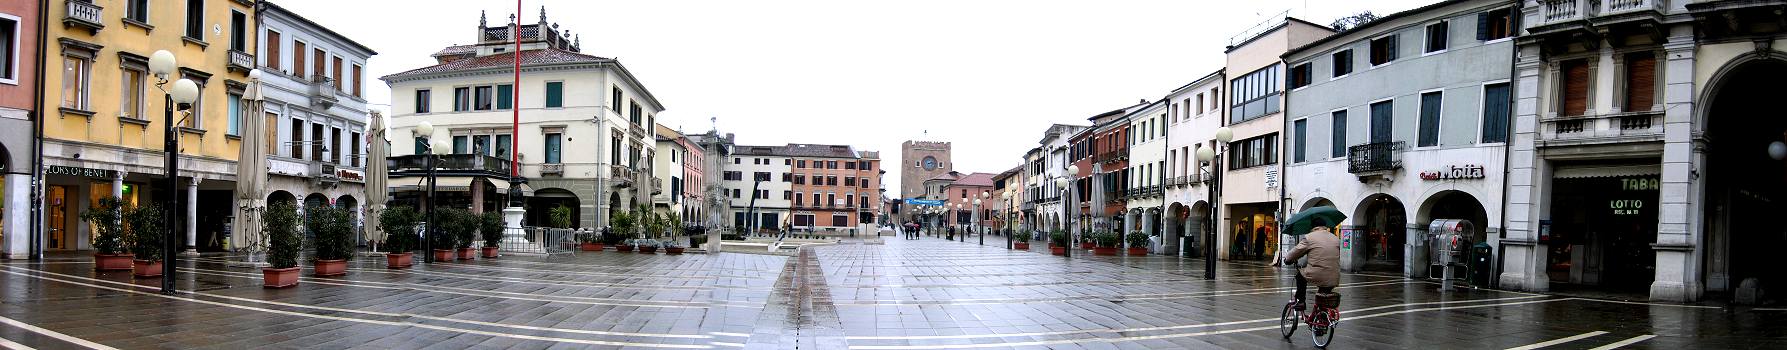 piazza Ferretto a Mestre, Venezia